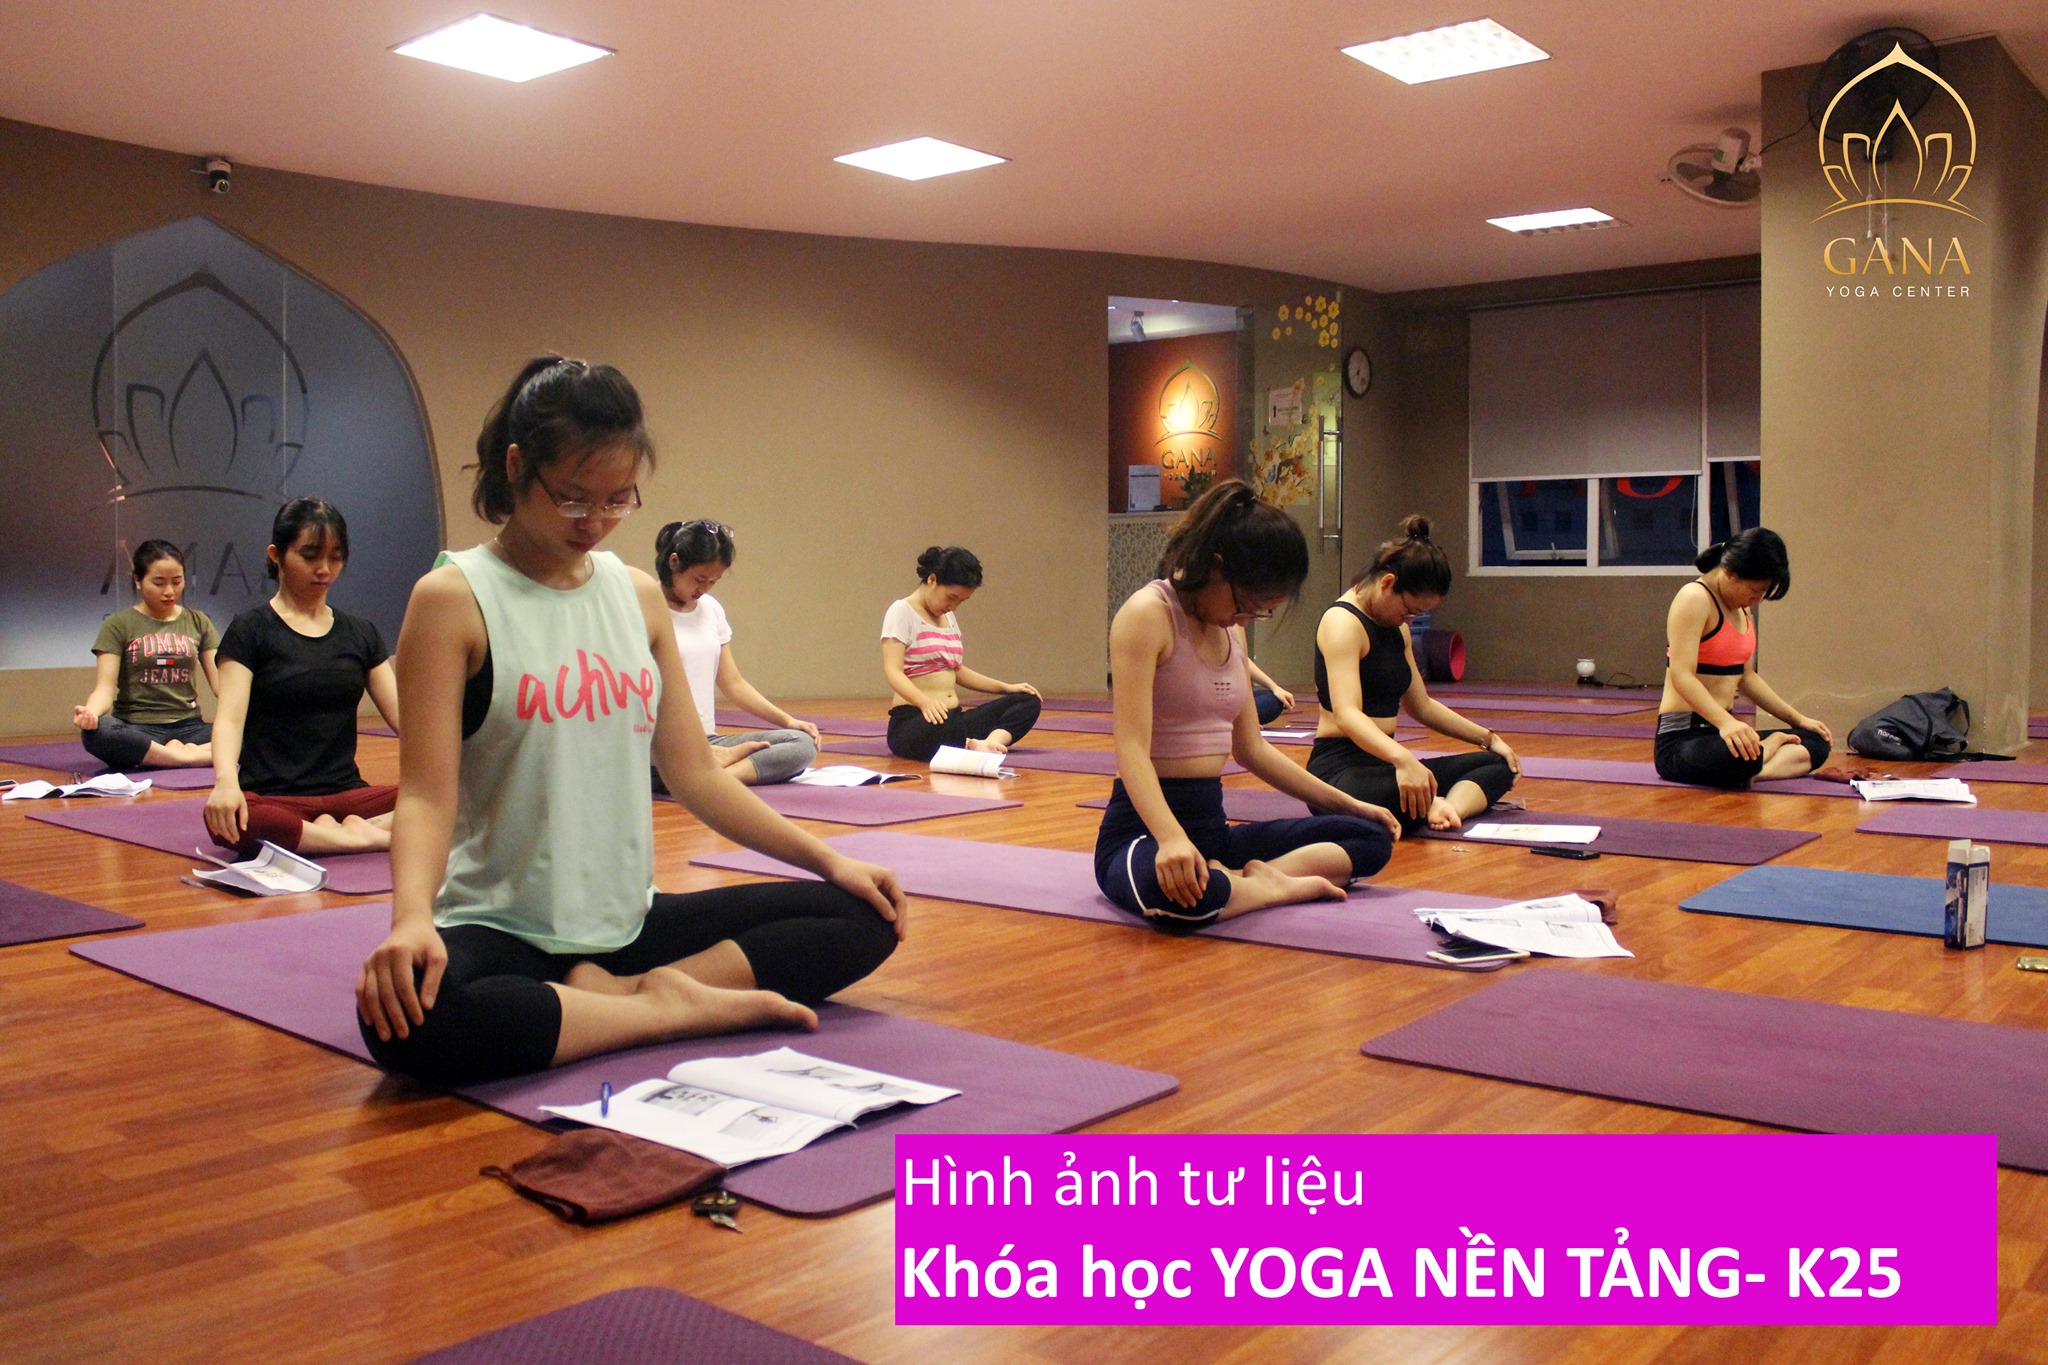 Xếp hạng 8 trung tâm dạy Yoga tốt nhất Hà Nội -  GANA Yoga Center